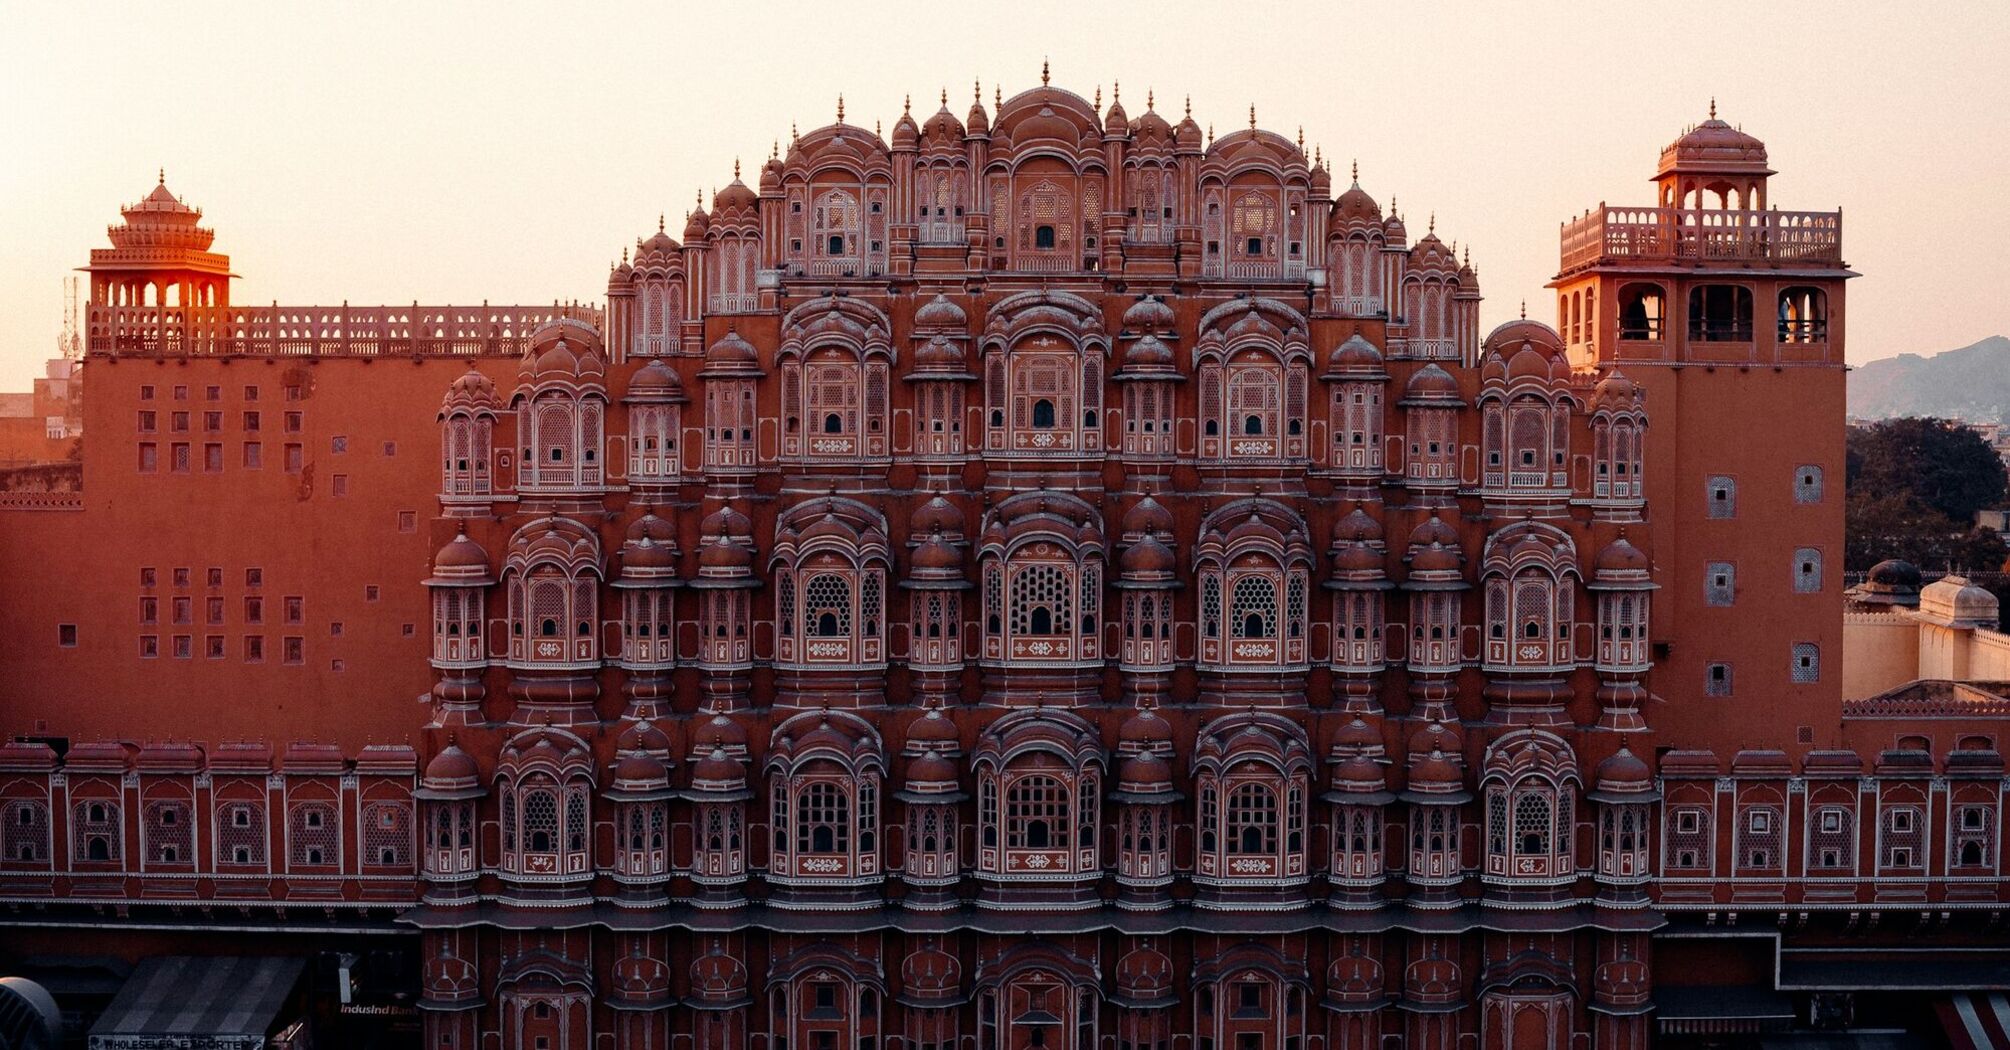 Hawa Mahal, Jaipur at sunset